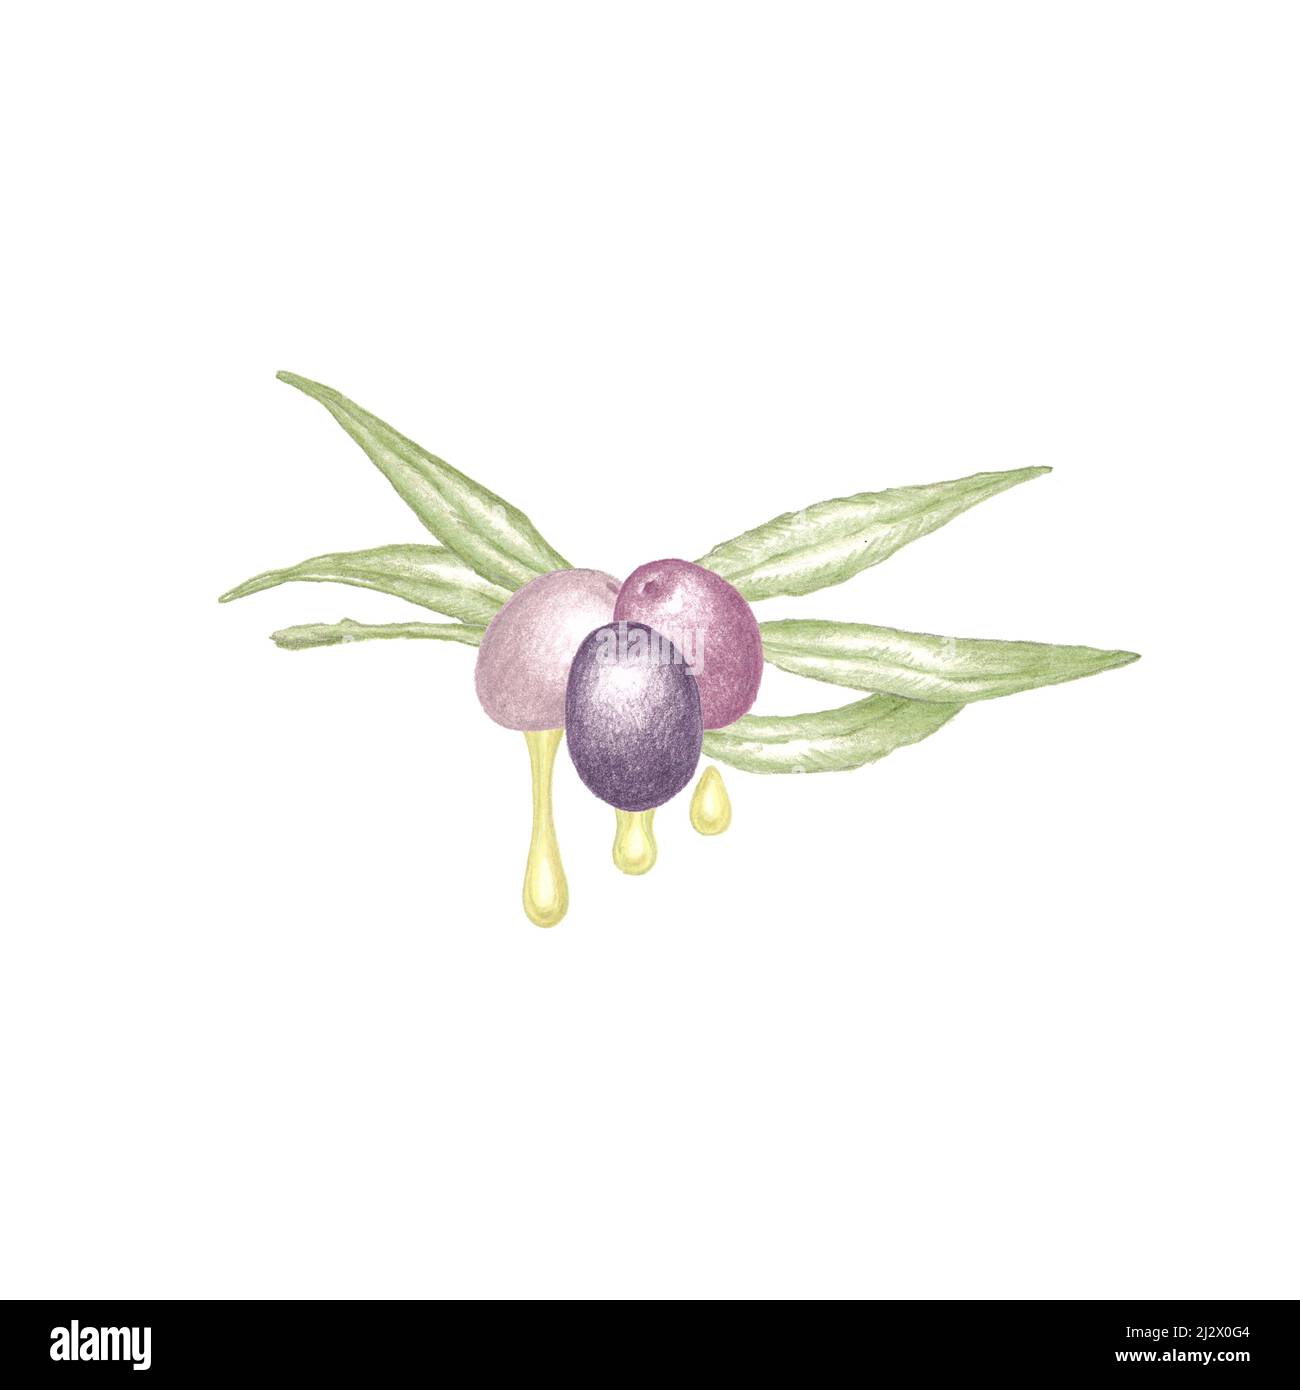 Illustrazione disegnata a mano del ramo dell'olivo con foglie verdi, tre olive viola mature e gocce di olio d'oliva vergine pressato a freddo, colore botanico s. Foto Stock